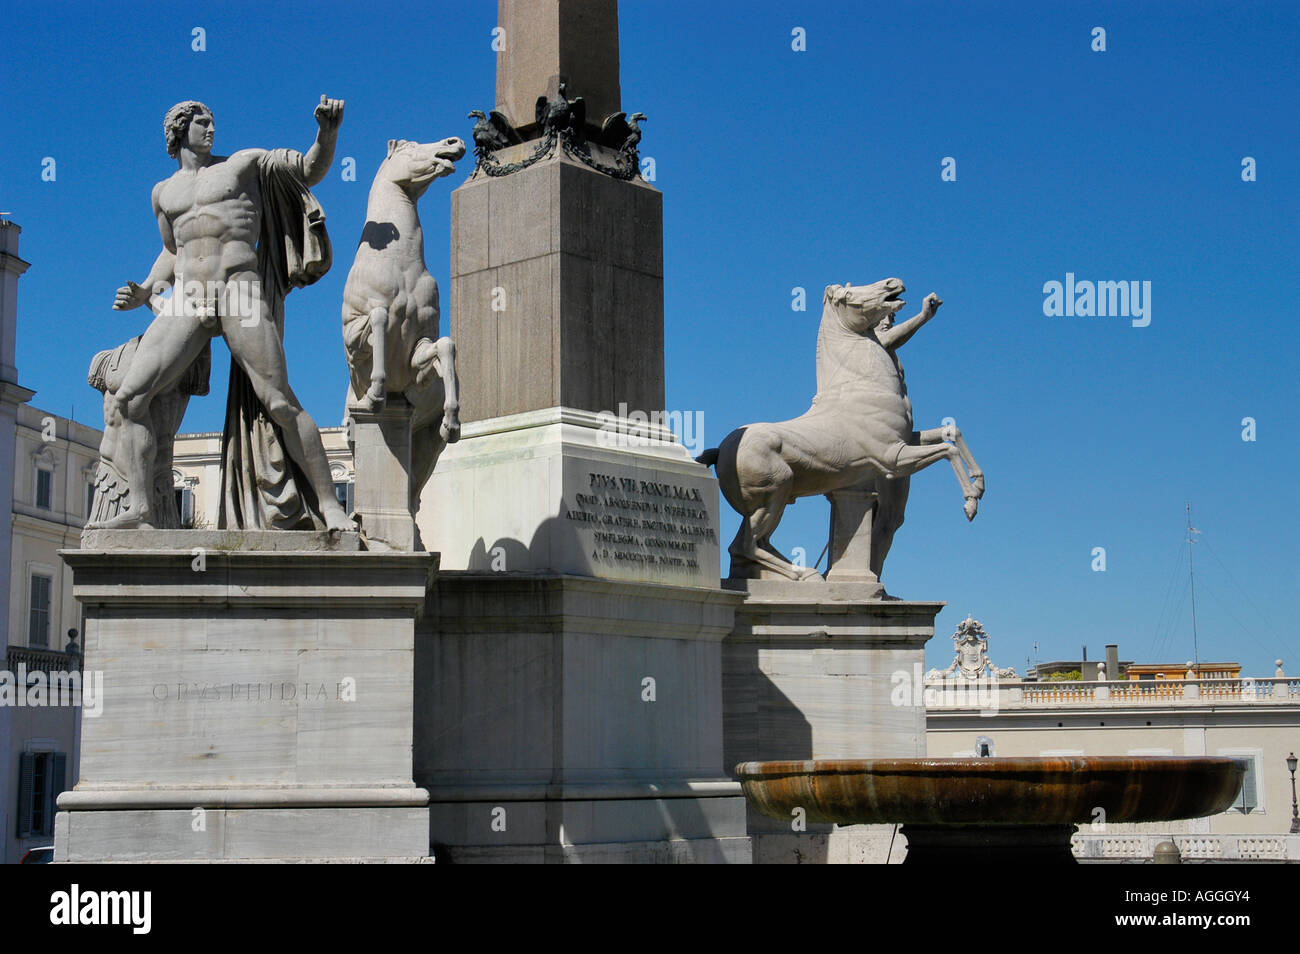 Quirinal fountain and obelisk, Piazza del Quirinale, Rome, Italy Stock Photo